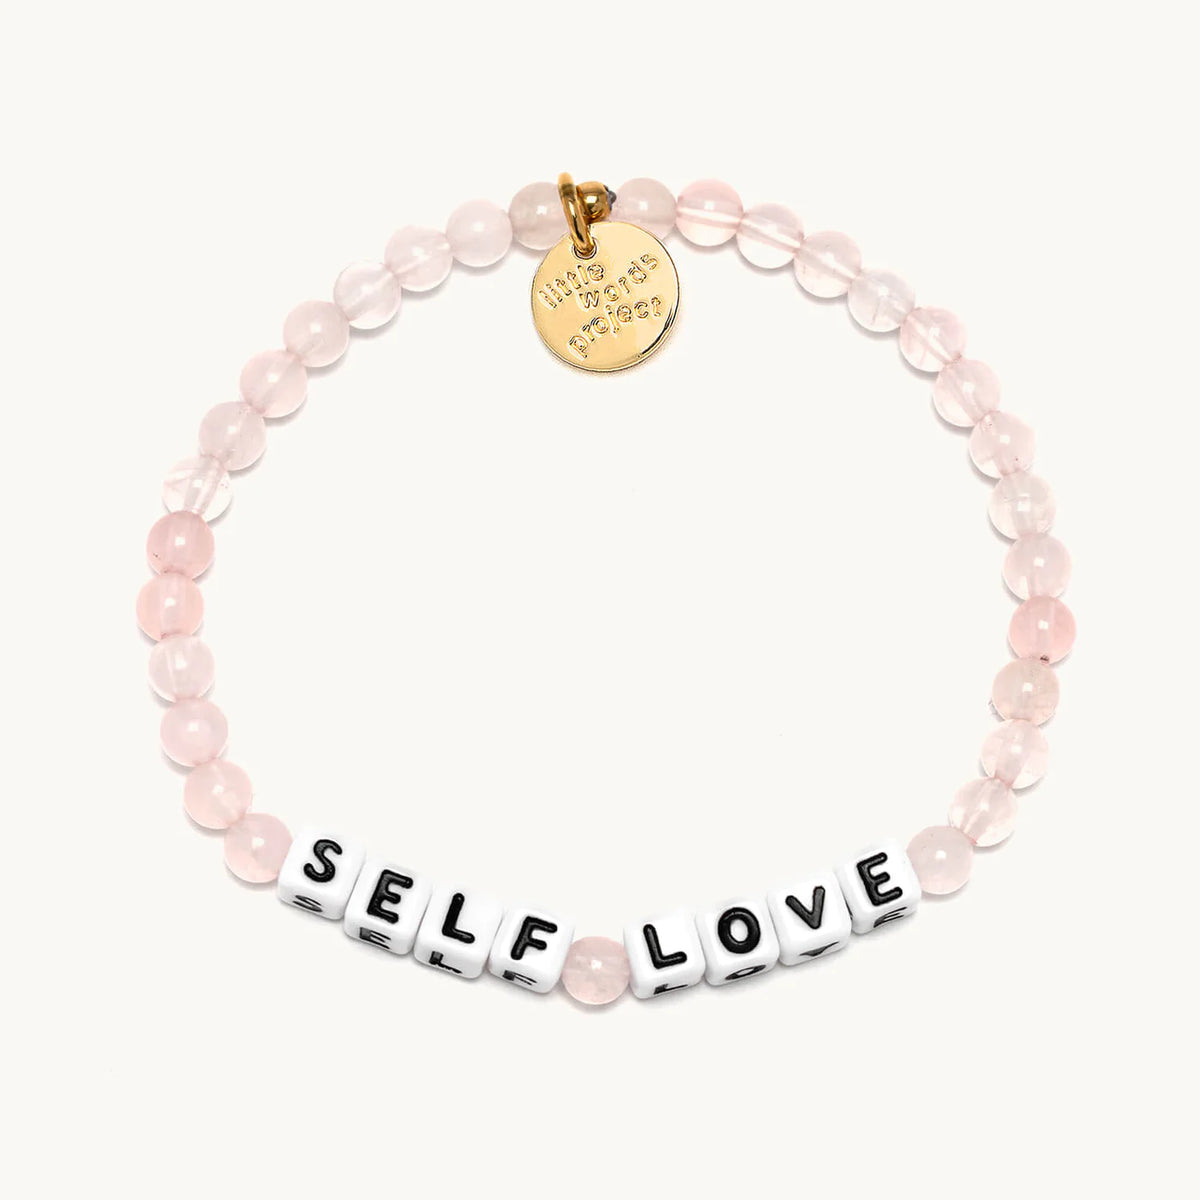 Self Love - Rose Quartz Bracelet M/L